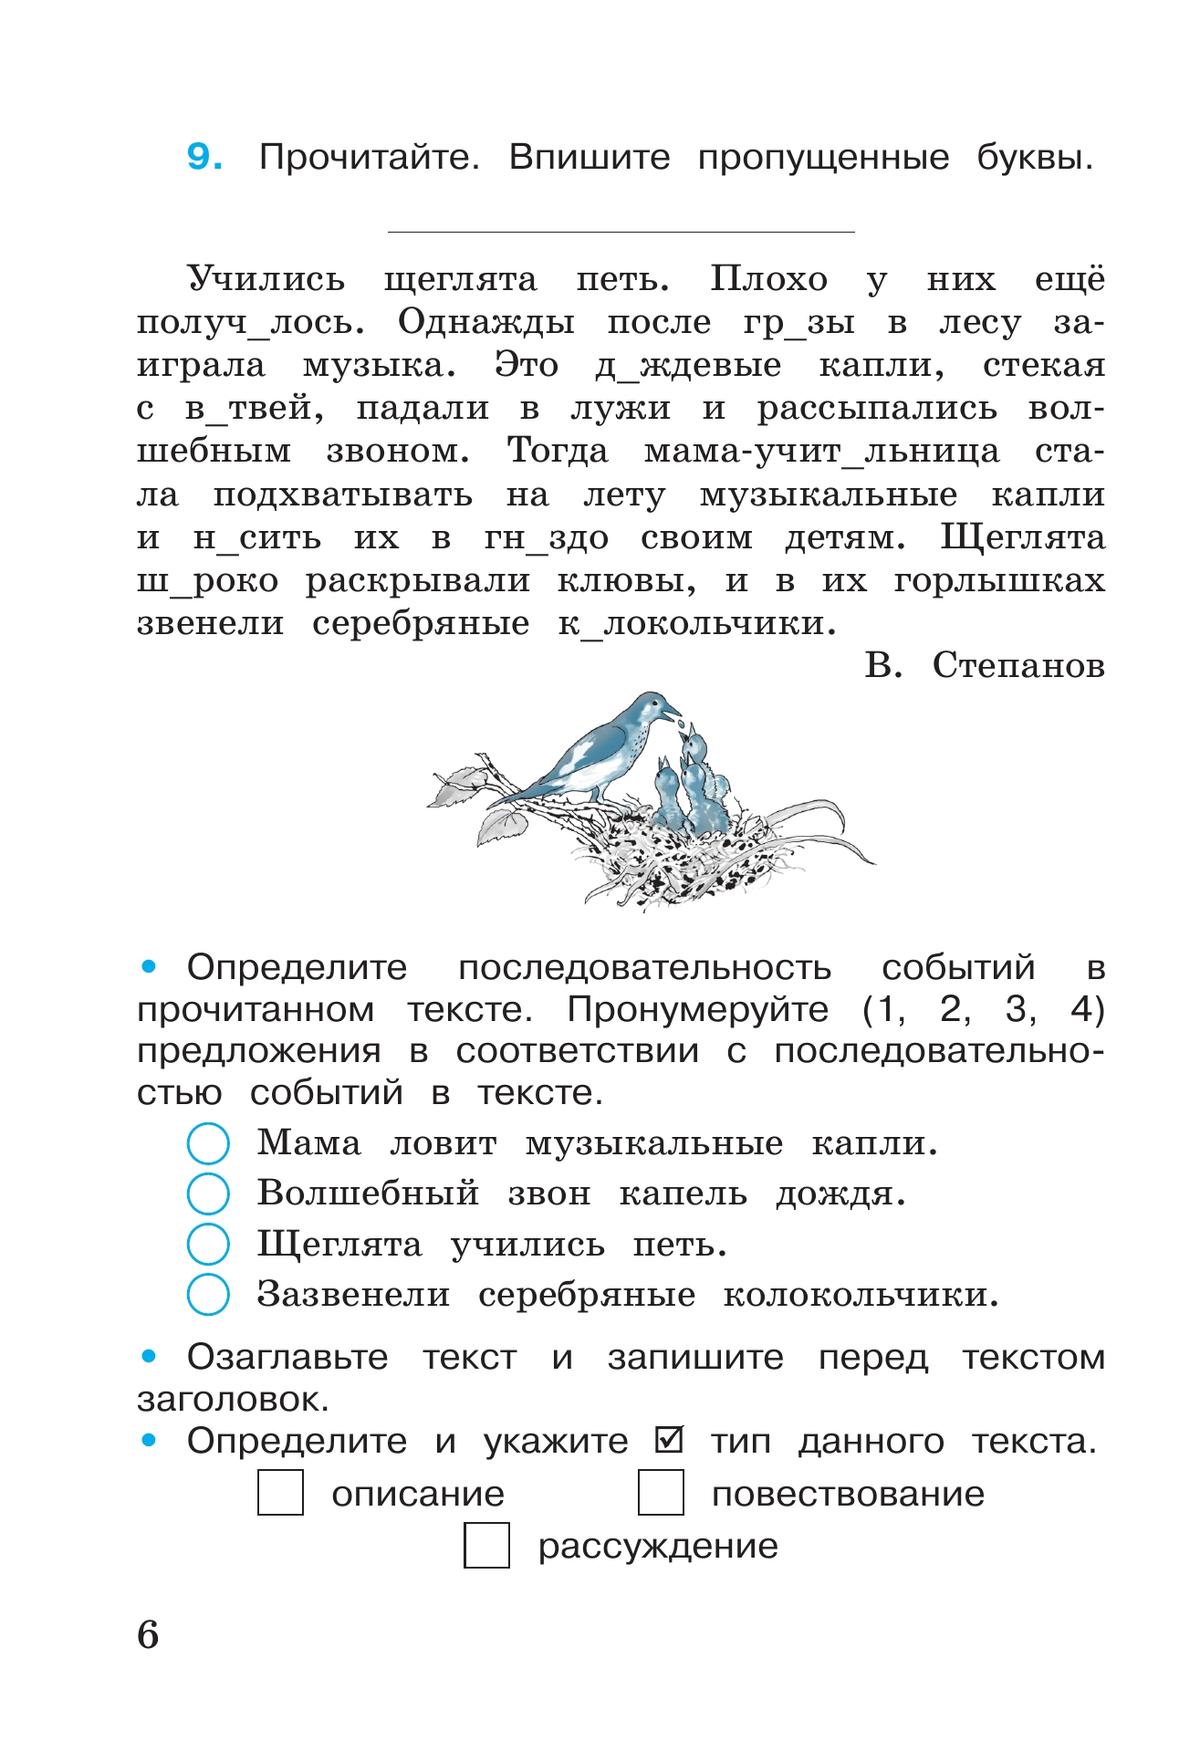 Русский язык. Рабочая тетрадь. 3 класс. В 2-х ч. Ч. 1 3